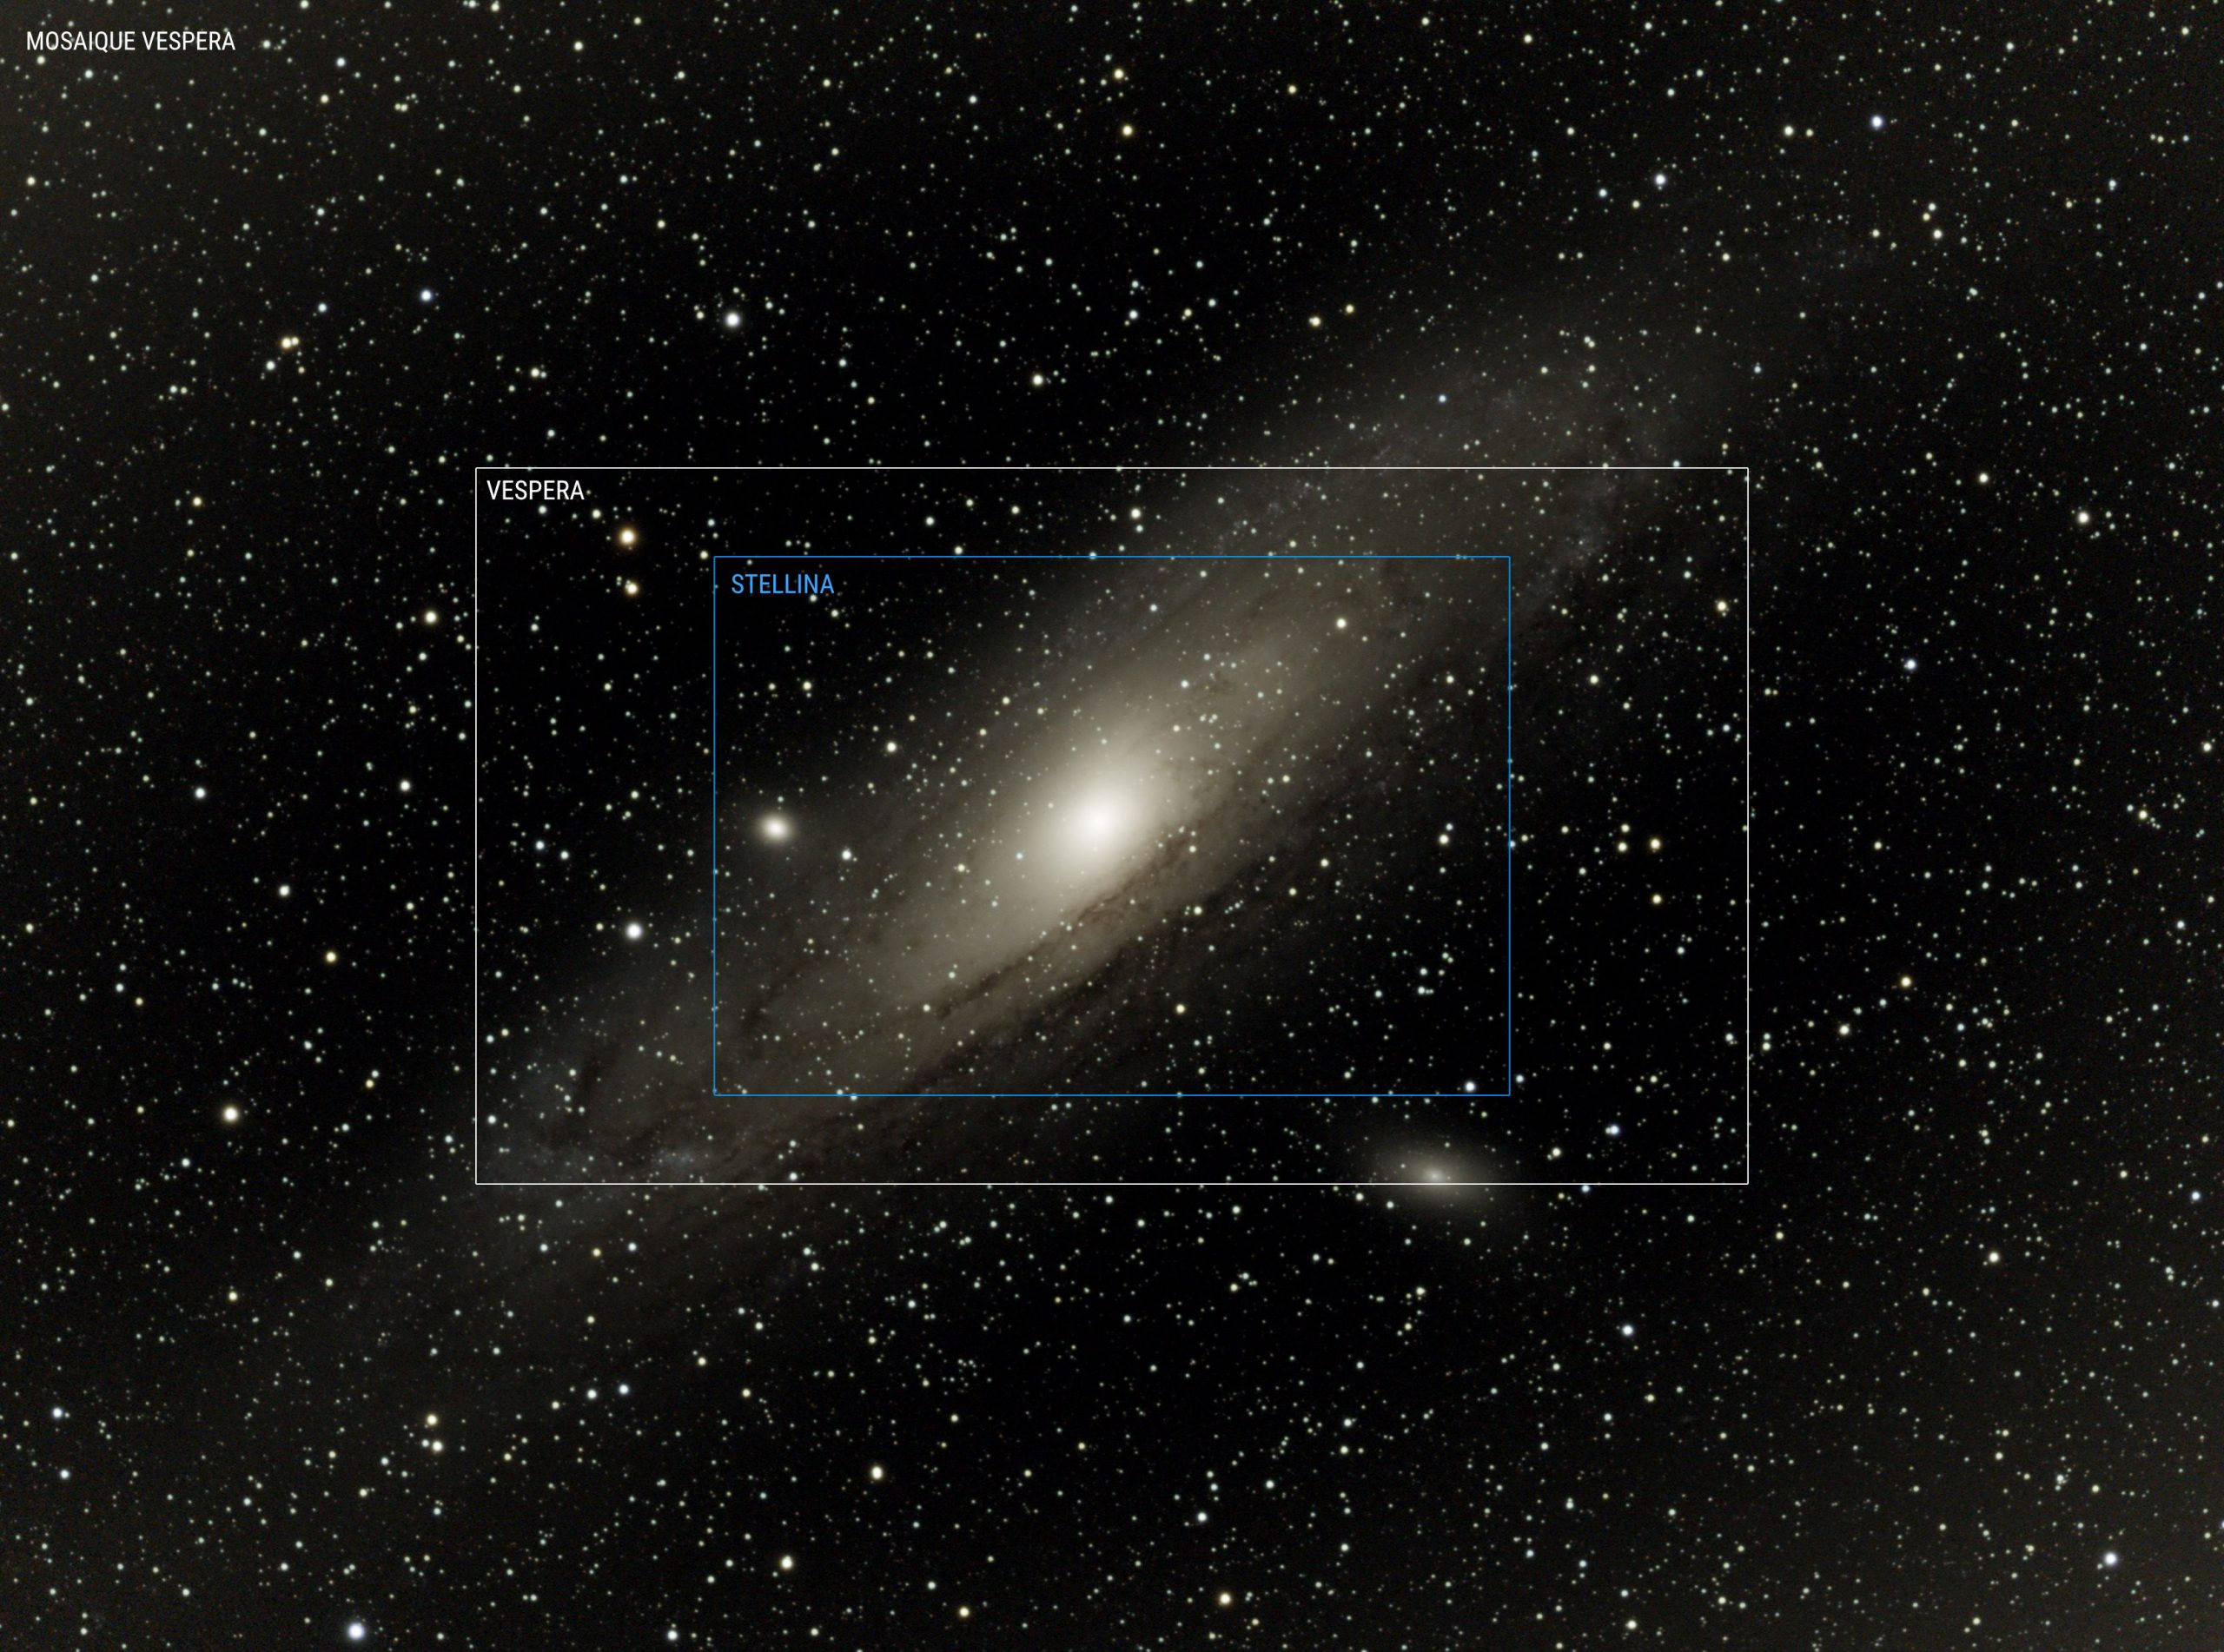 M31 Andromeda Galaxy premier "mode panorama" jamais intégré à un télescope